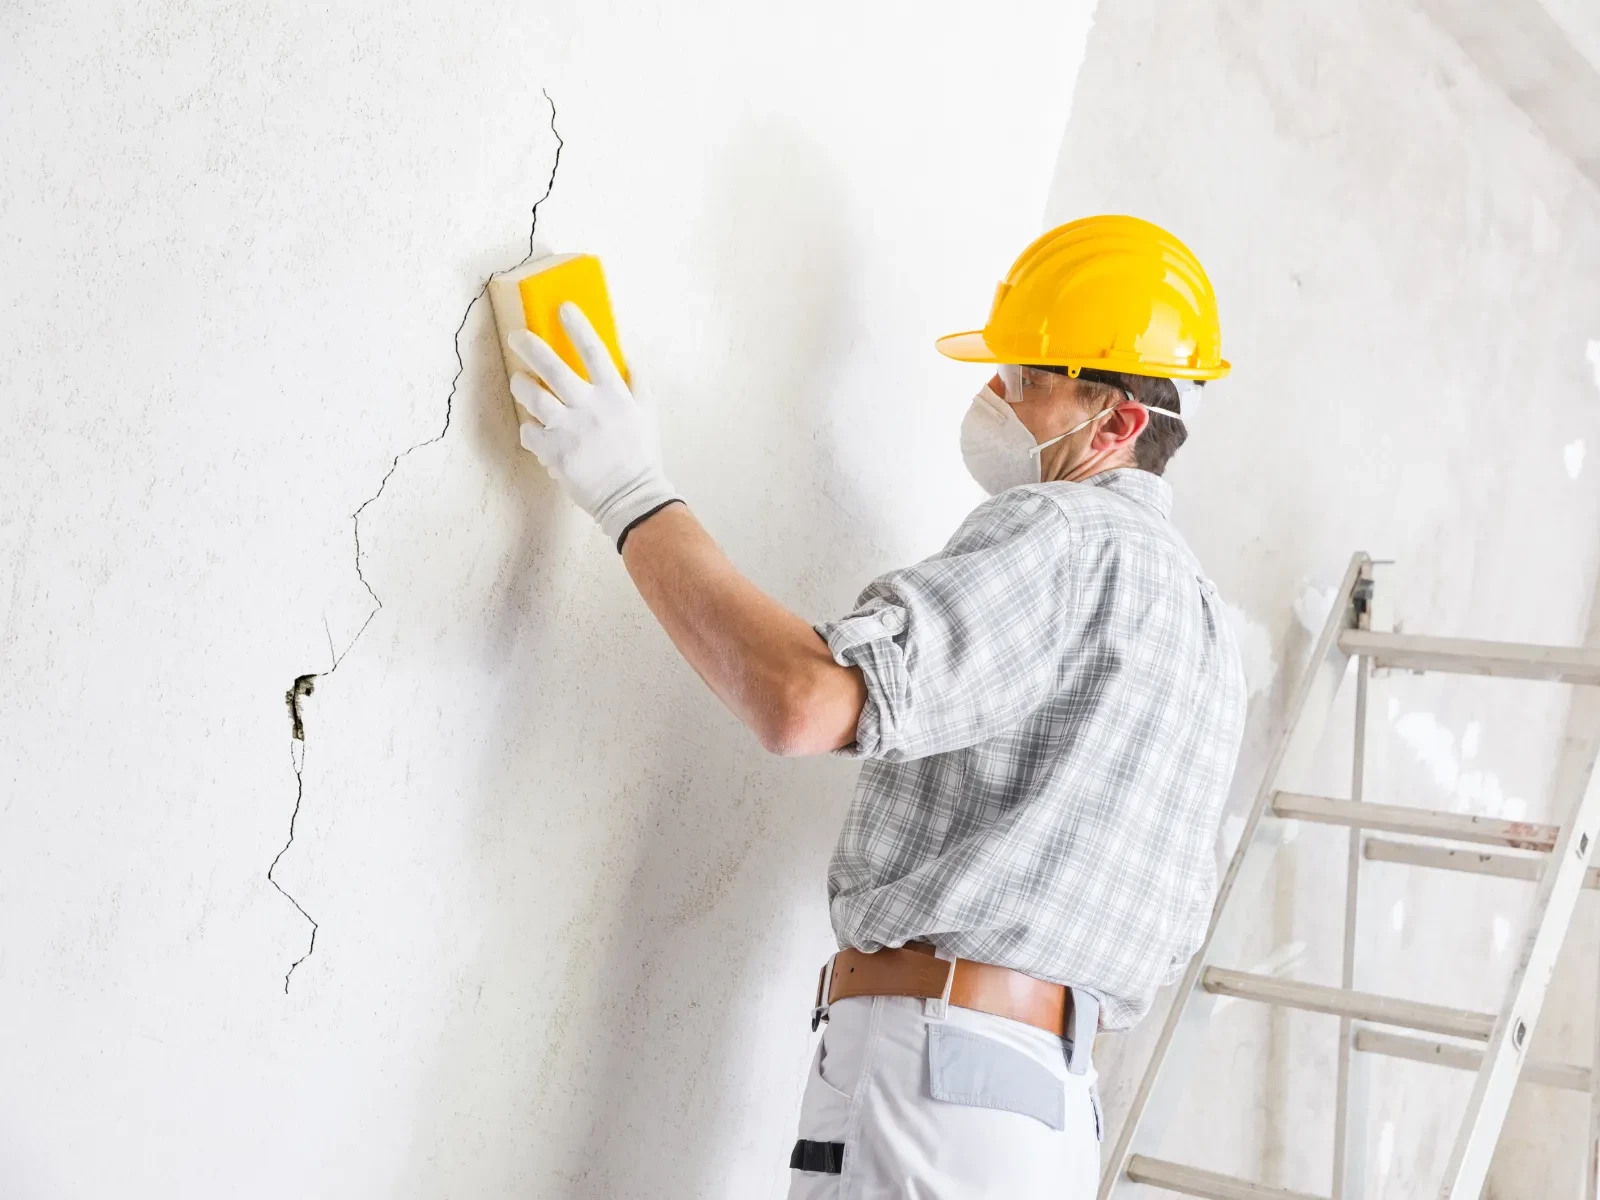 Nếu bụi bẩn trong khe nứt tường được vệ sinh sạch, sẽ giúp cho hiệu quả trám trét đạt kết quả tốt nhất